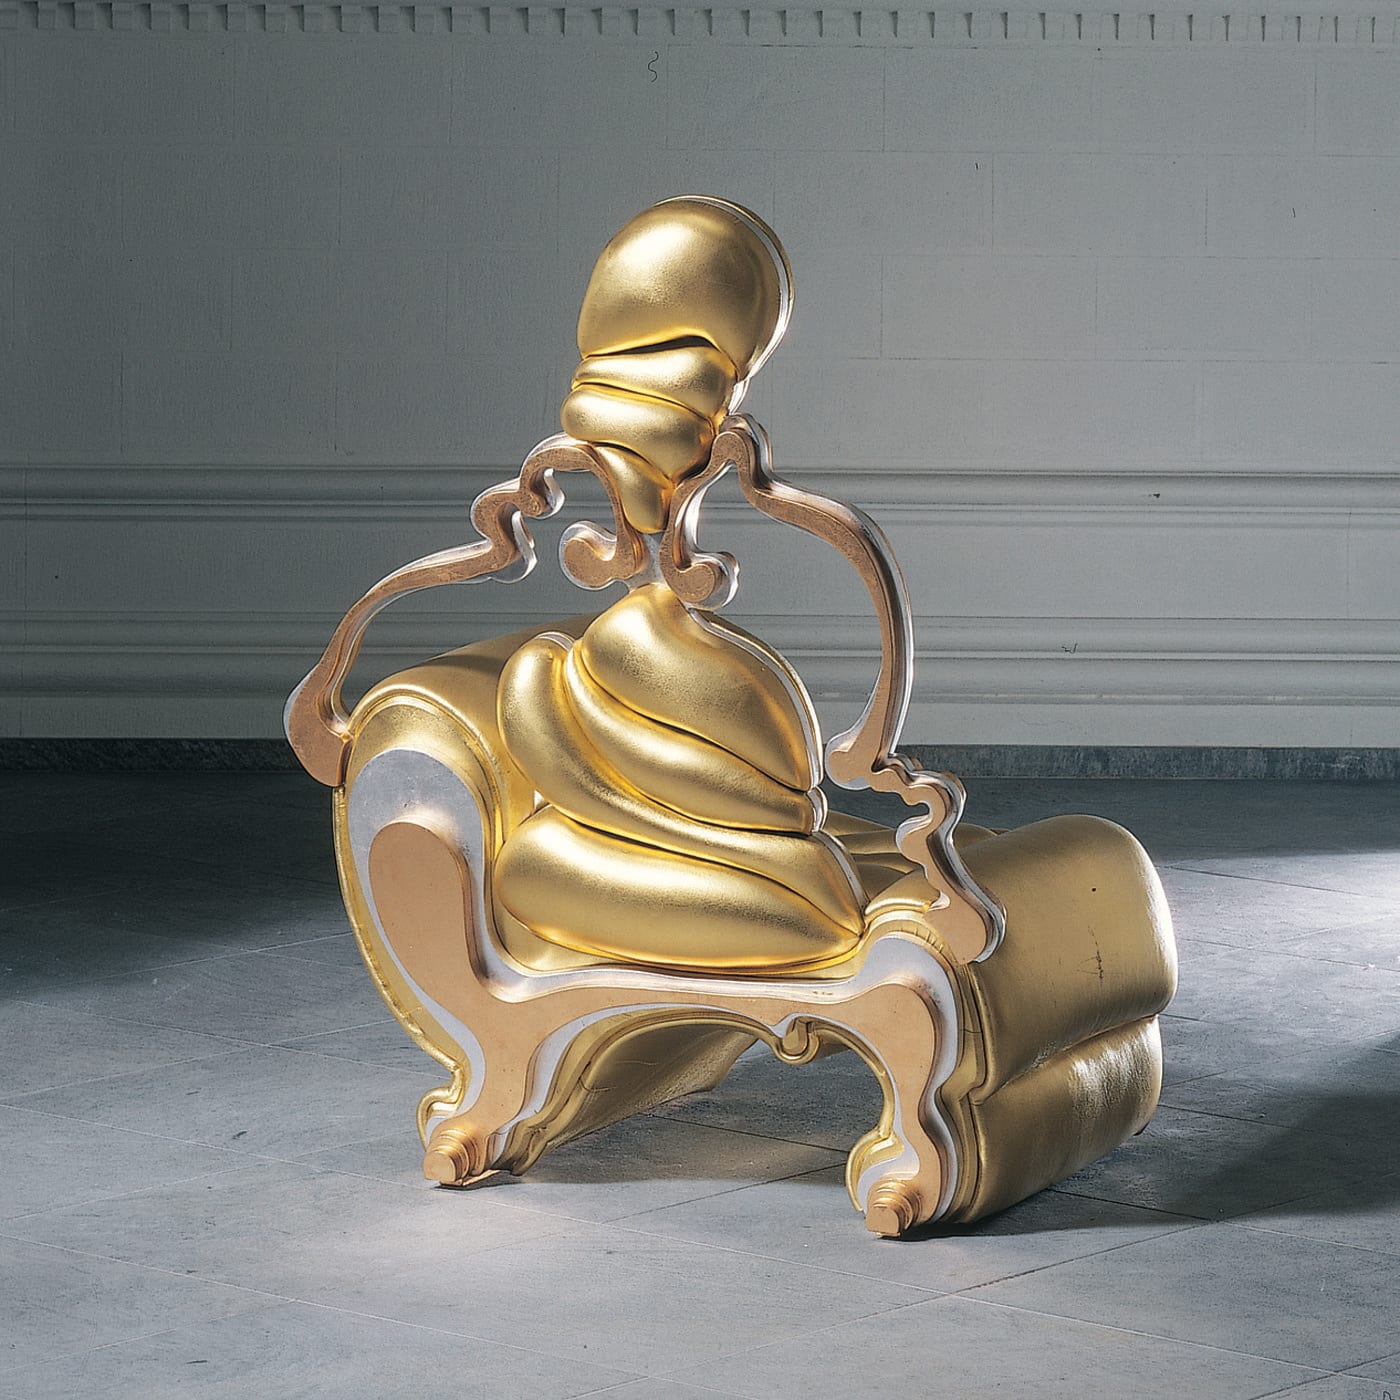 Antropomorfa Chair by Roberto Fallani - Mirabili